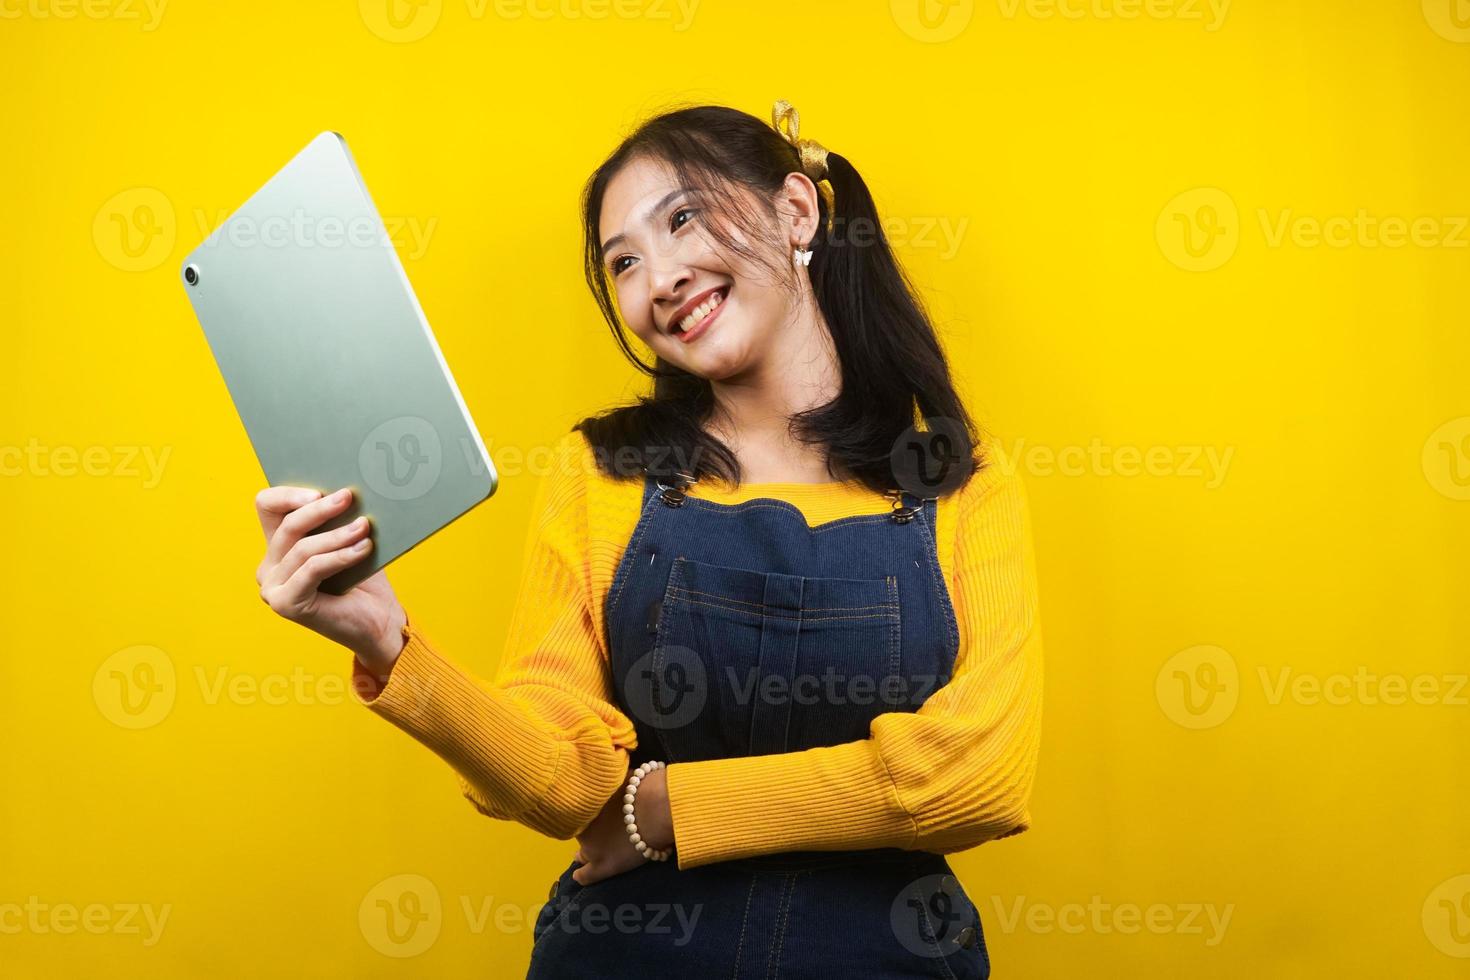 jolie et mignonne jeune femme joyeuse, confiante, tenant une tablette à la main, présentant quelque chose, faisant la promotion du produit, de la publicité, isolée photo